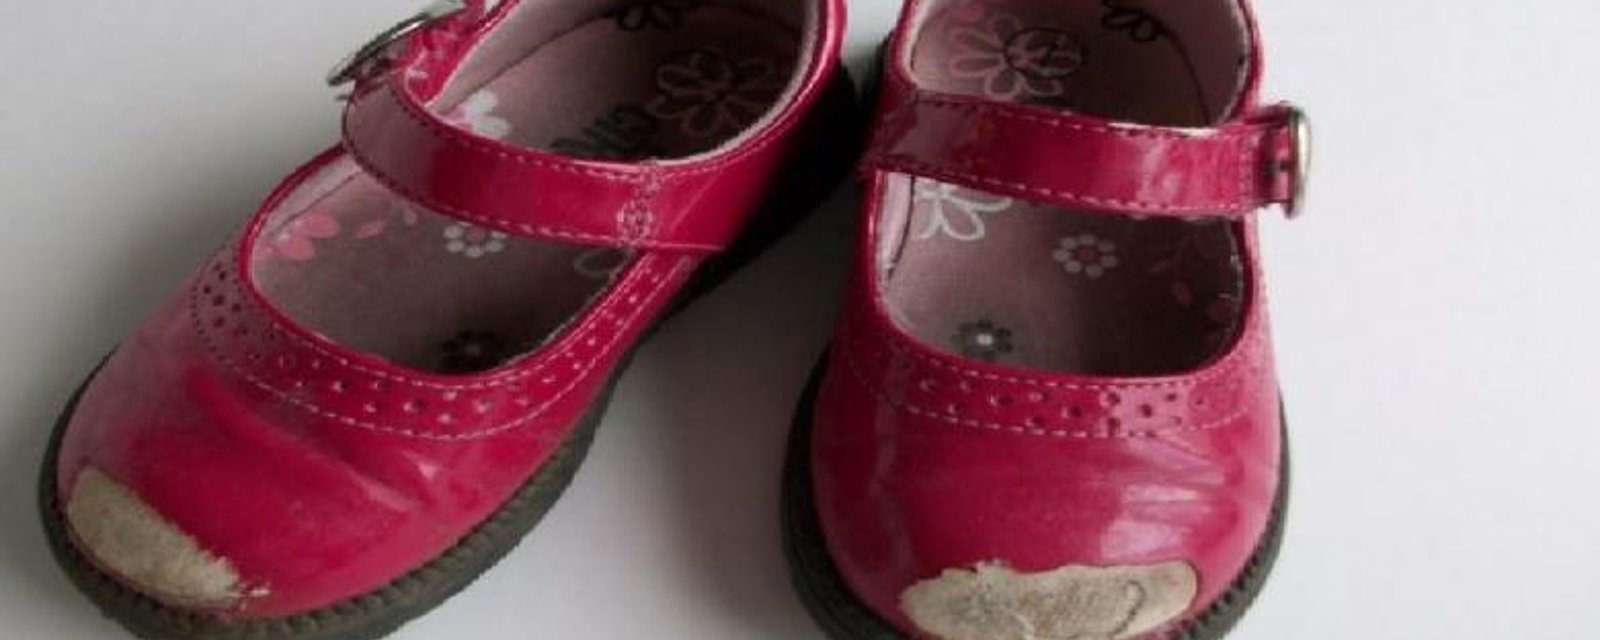 Les enfants font la vie dure aux chaussures: Voici un truc astucieux pour les réparer sans dépenser un rond